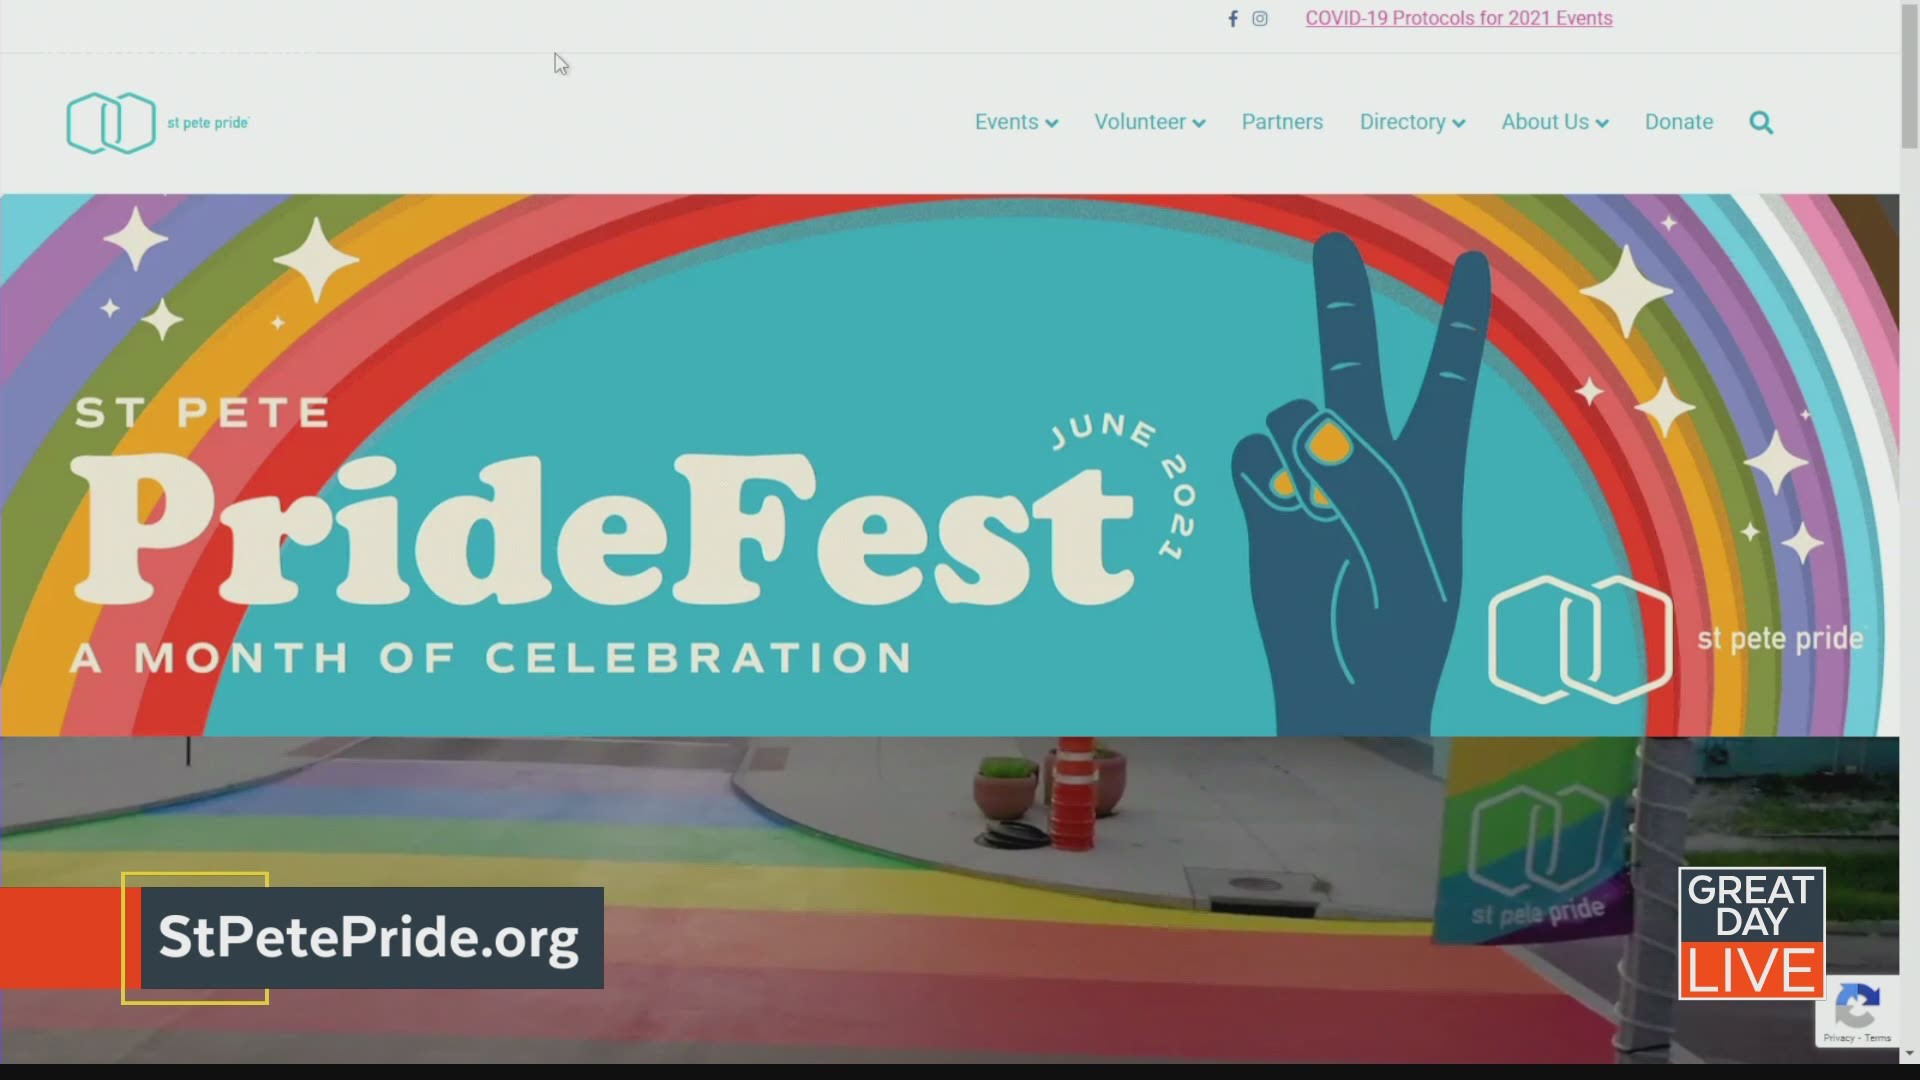 St. Pete Pride kicks off a month long celebration